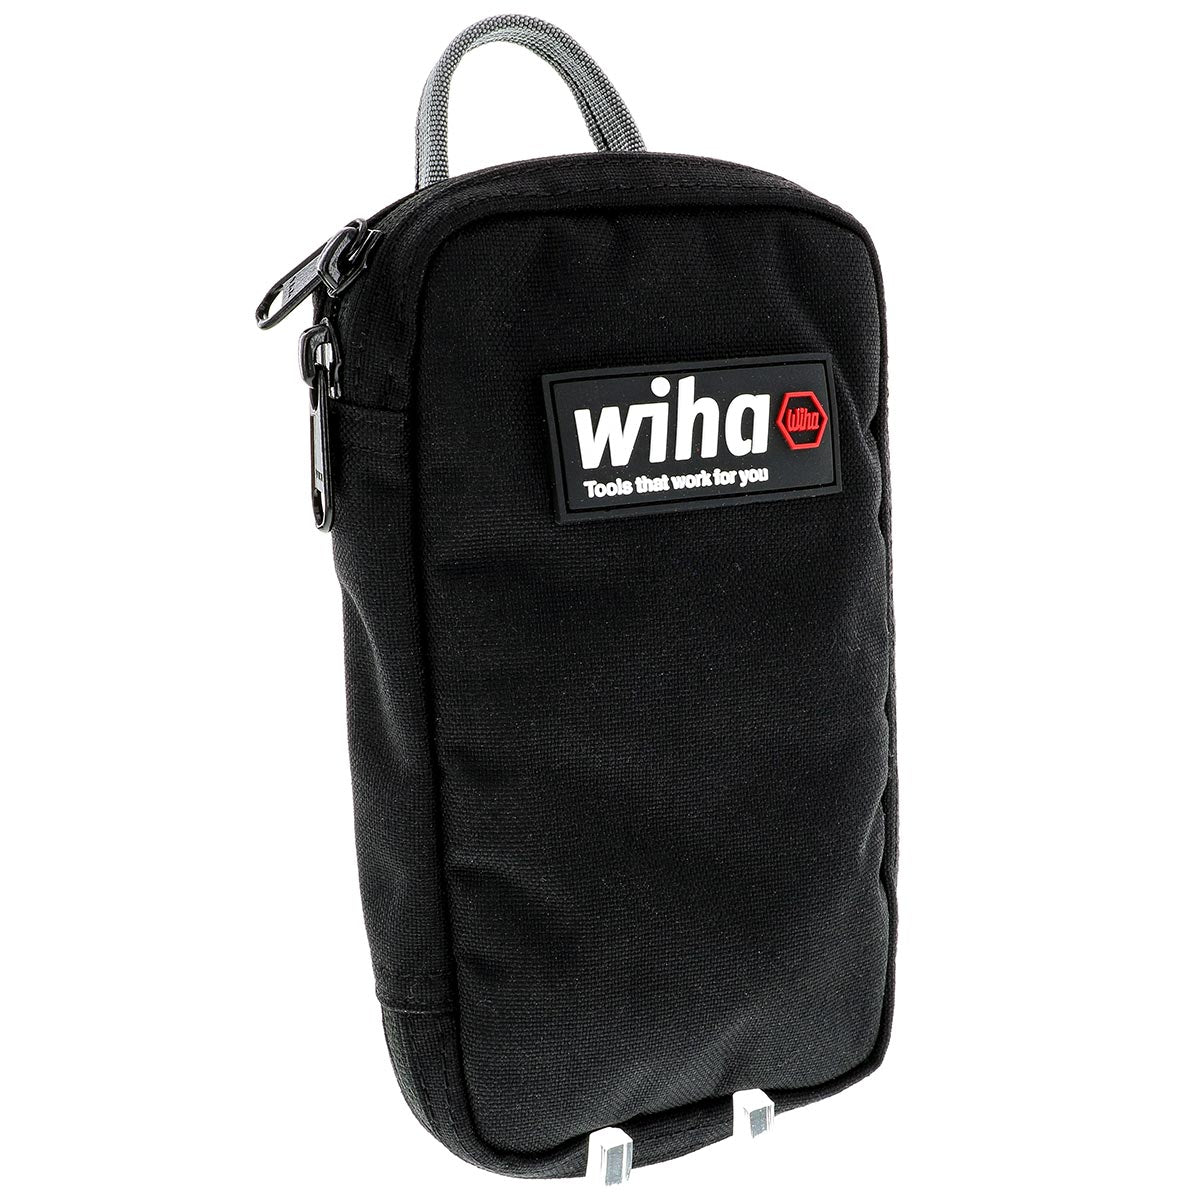 Wiha Cordura Utility Organizer With Zipper Pouch